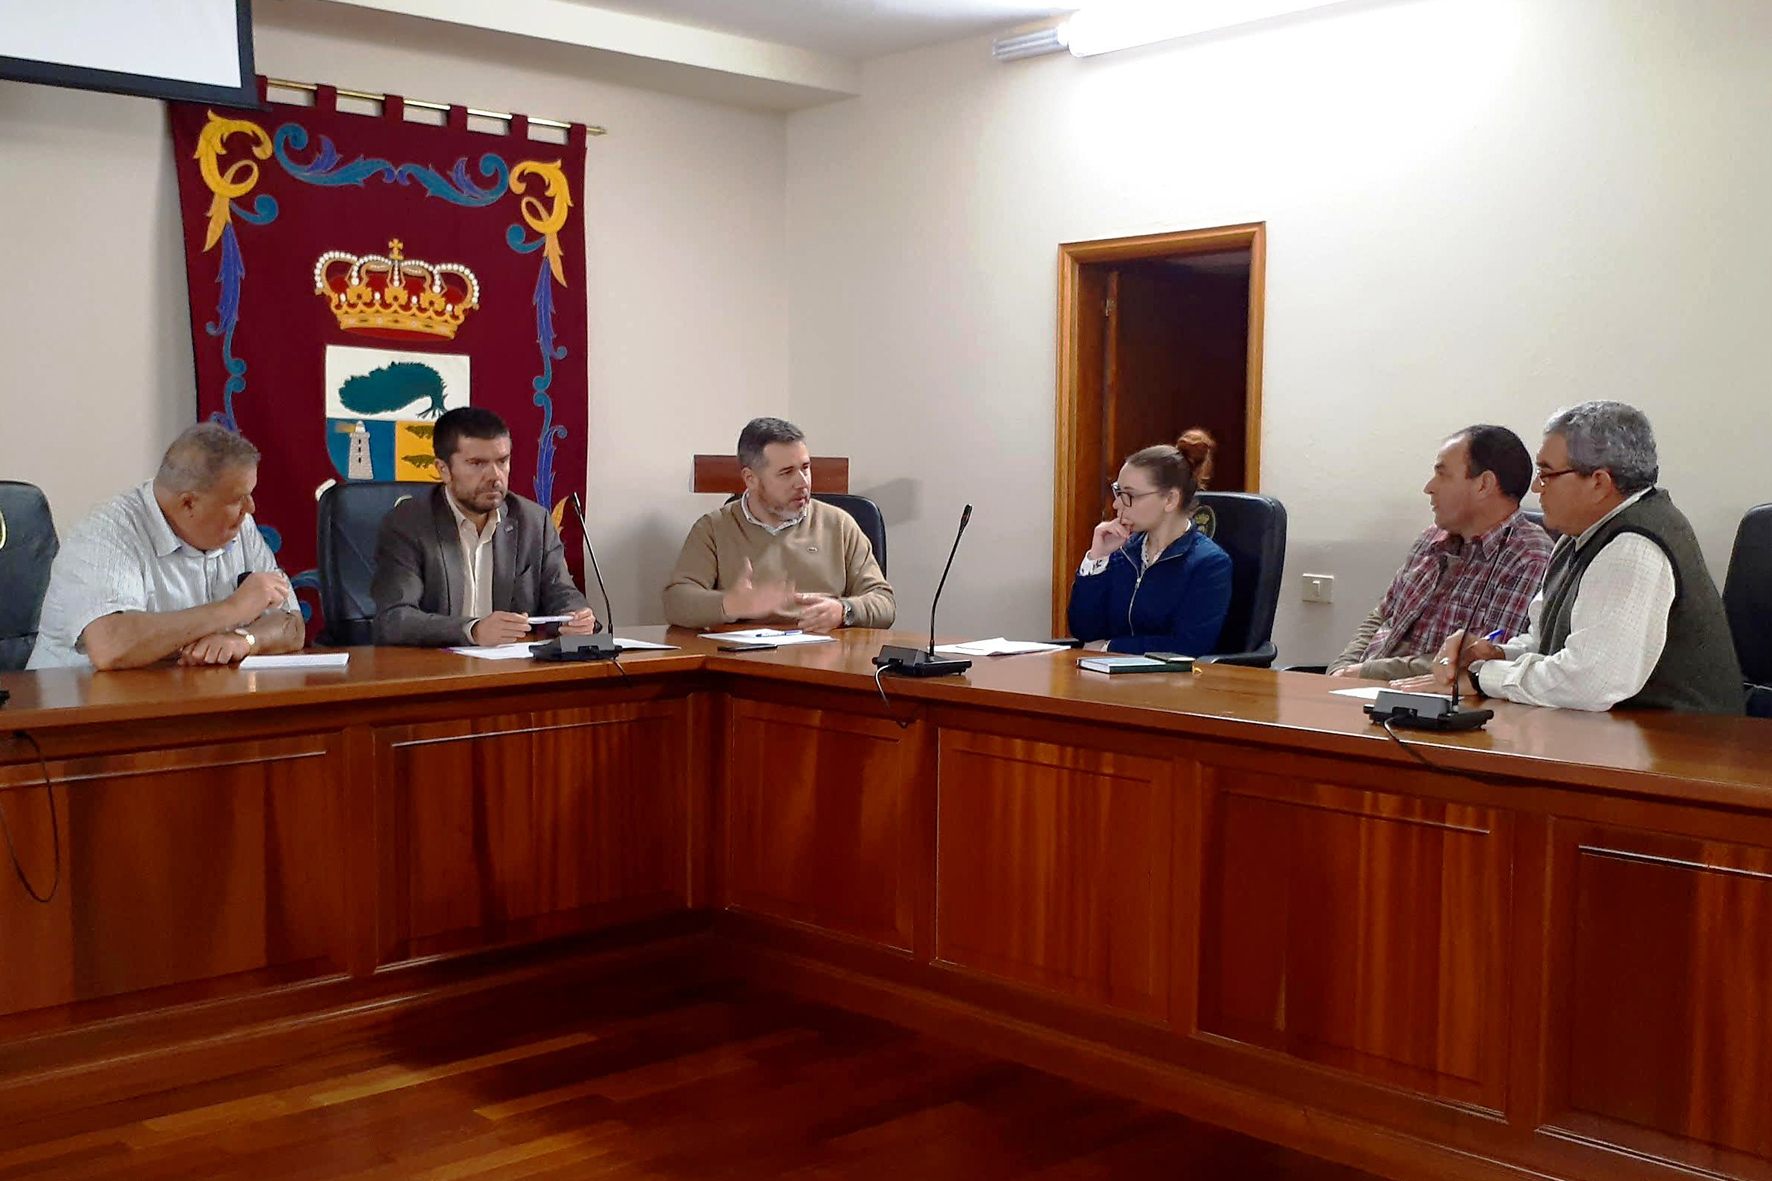 La Universidad de La Laguna y el Ayuntamiento de La Frontera trabajan conjuntamente en proyectos de interés municipal